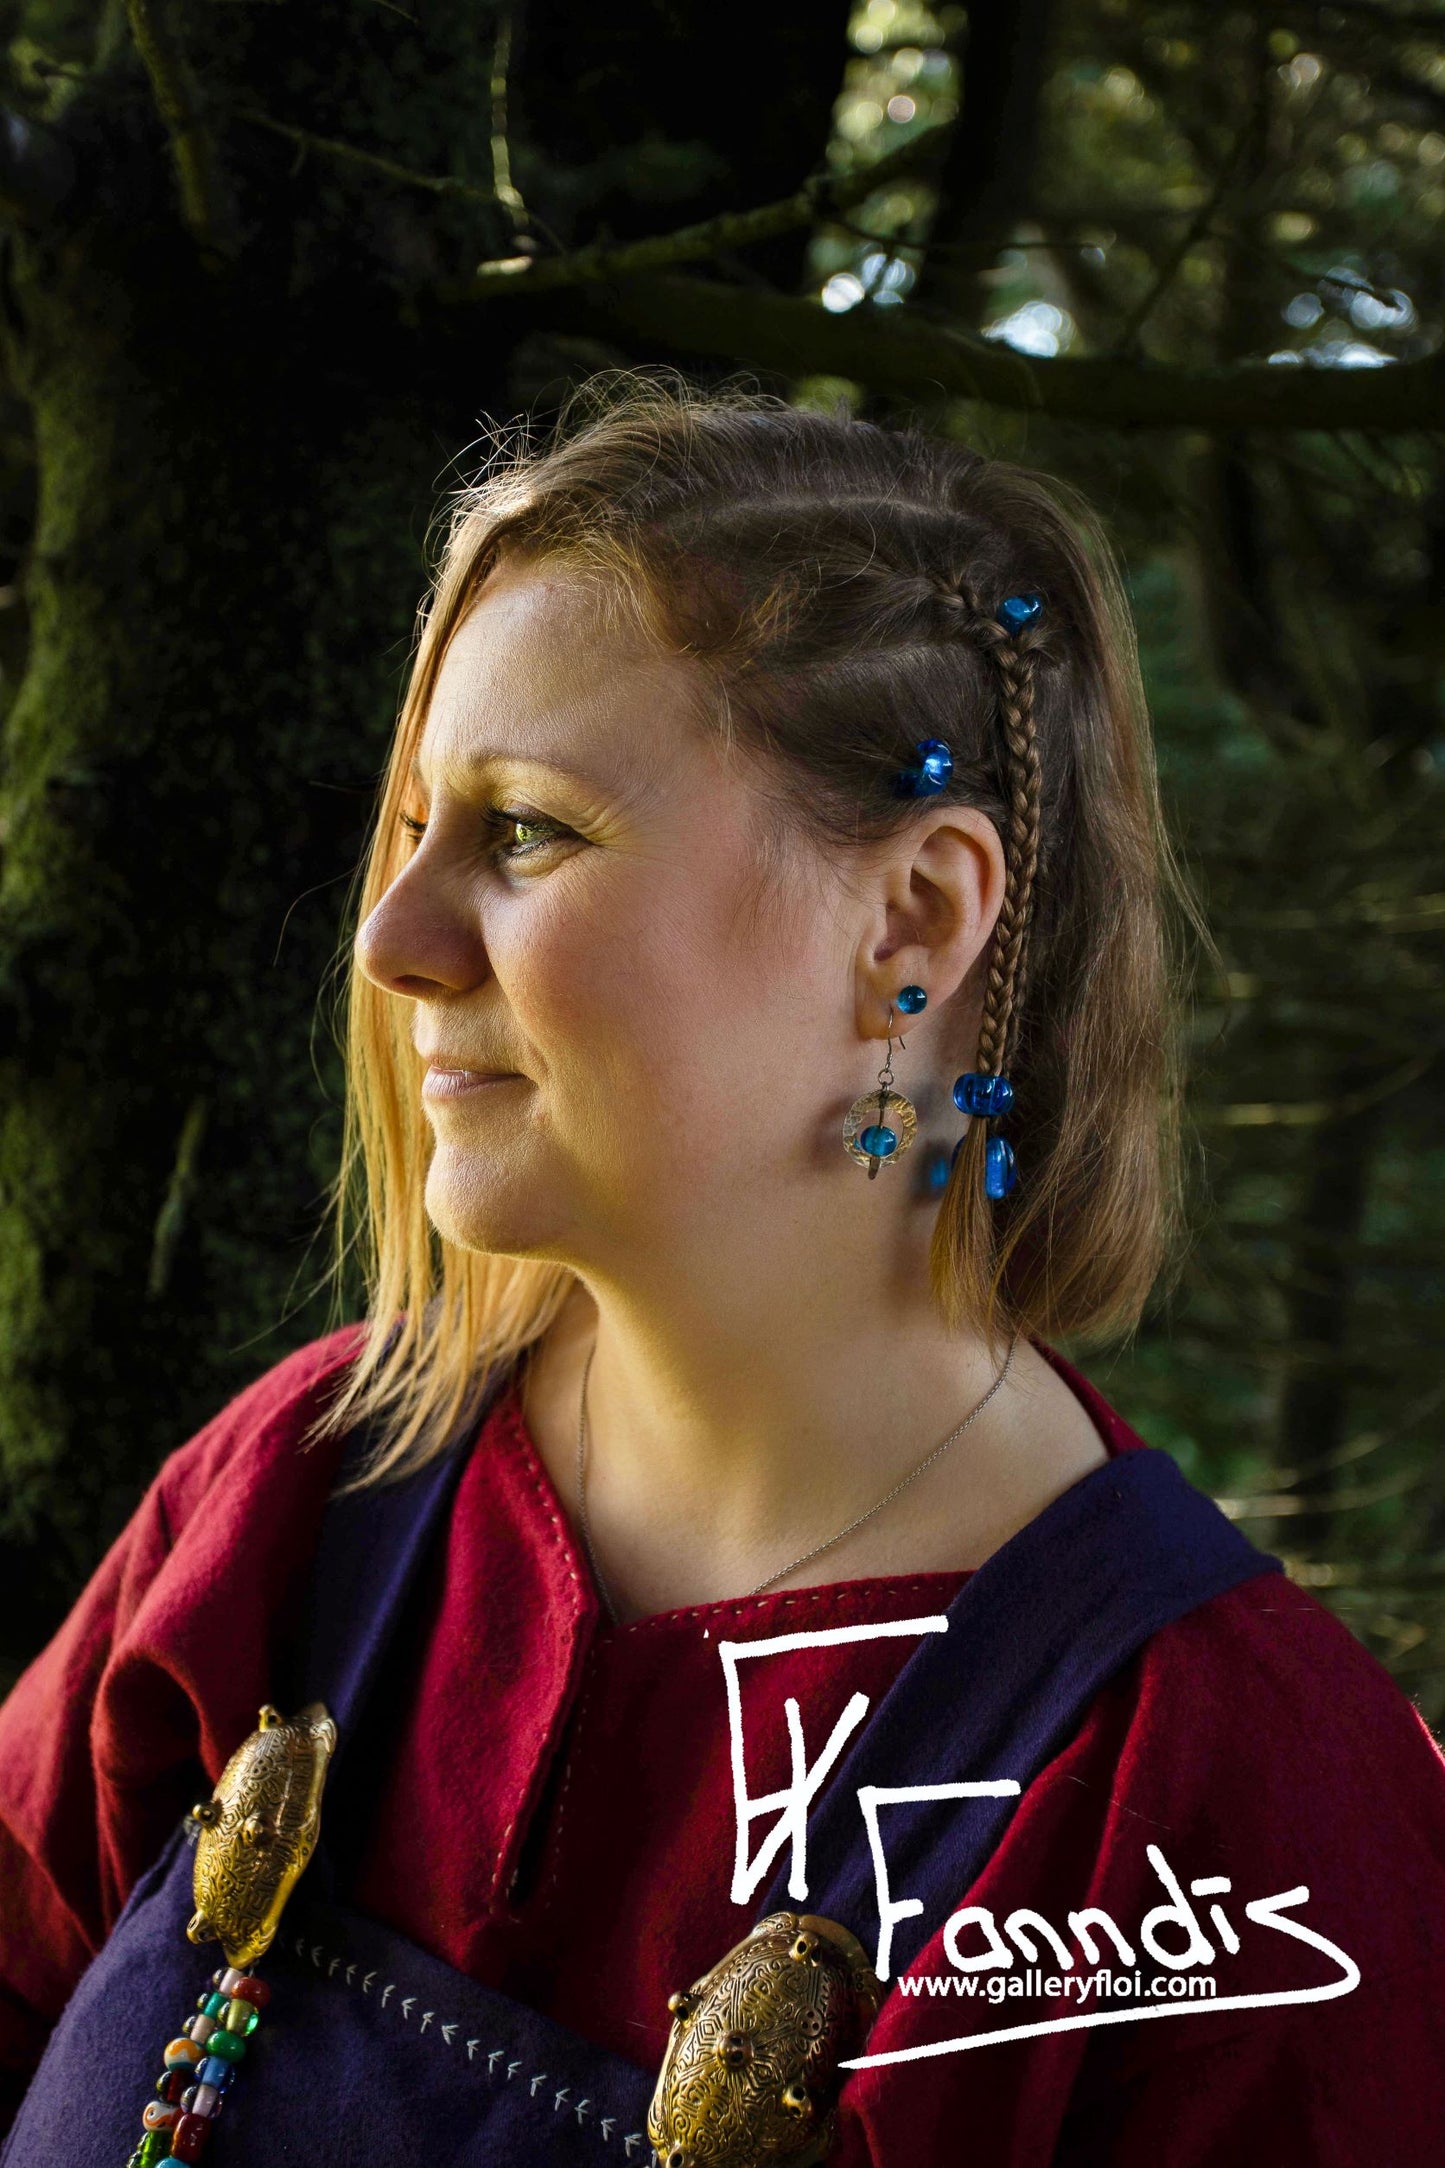 Víkinga glerperlu hárskraut Mið Fjólublár / Viking glass bead hair accessories Mid Purple